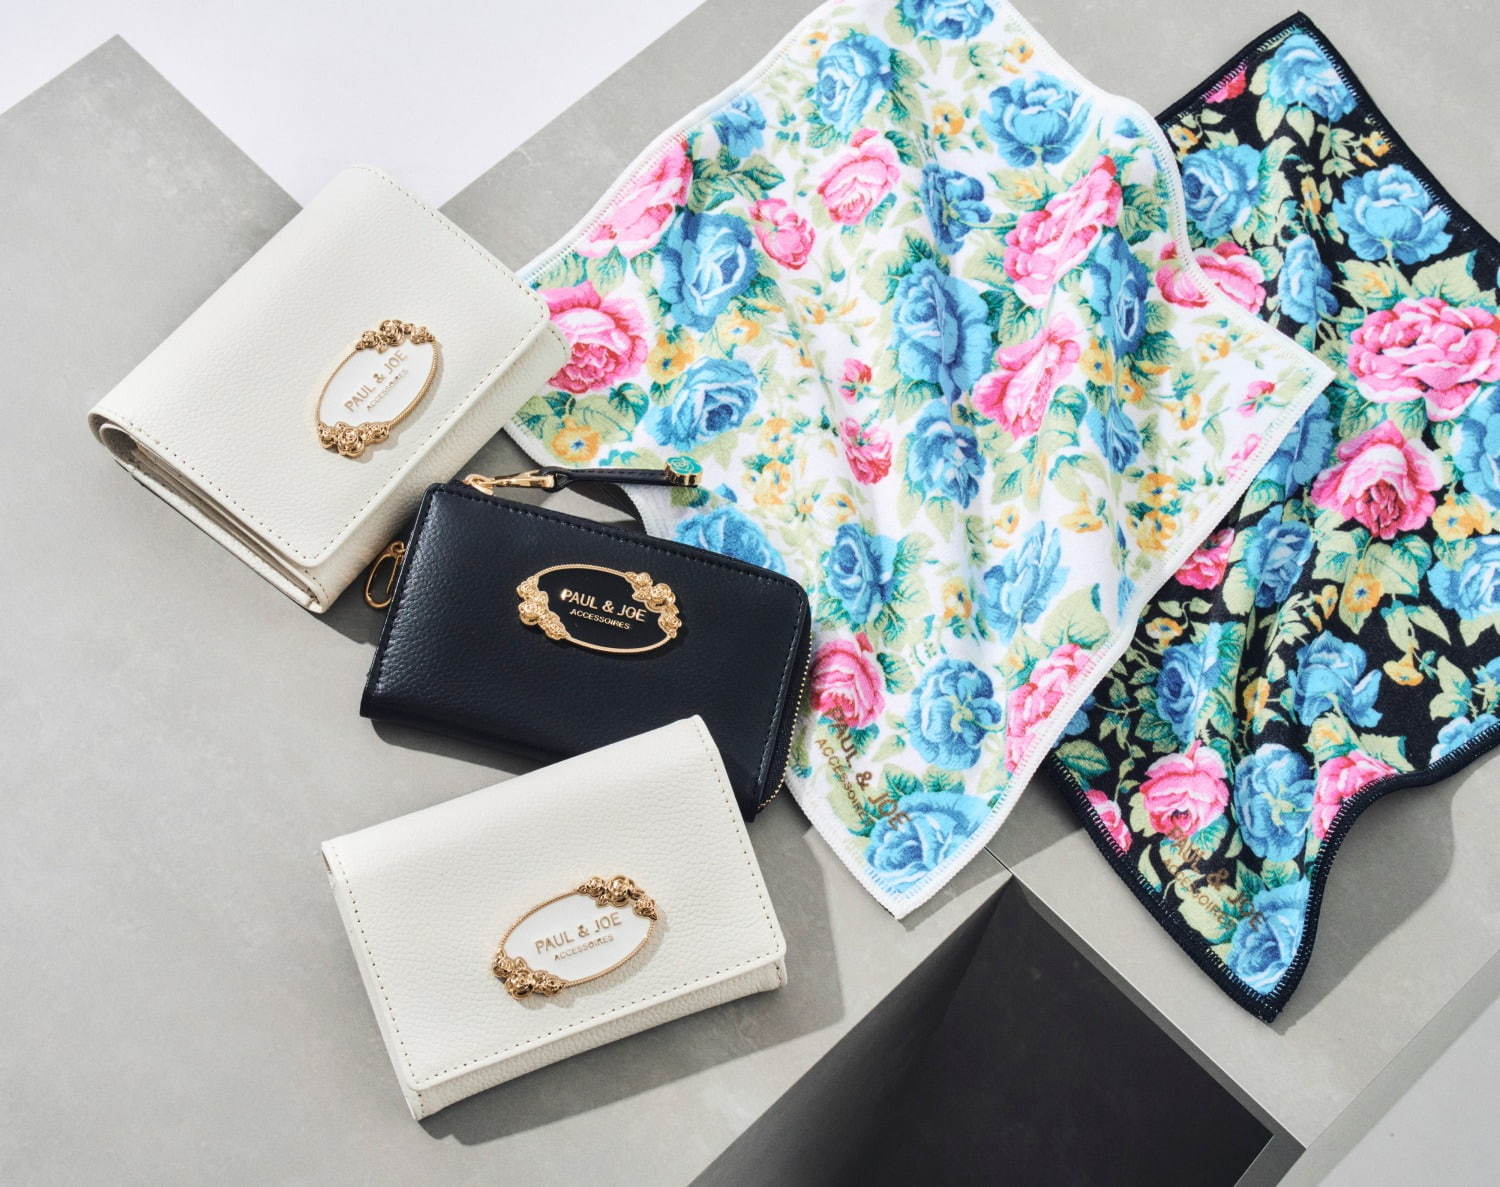 ポール ジョー アクセソワ新作 花柄スカーフでアレンジできるトートバッグ ローズモチーフの財布 ファッションプレス